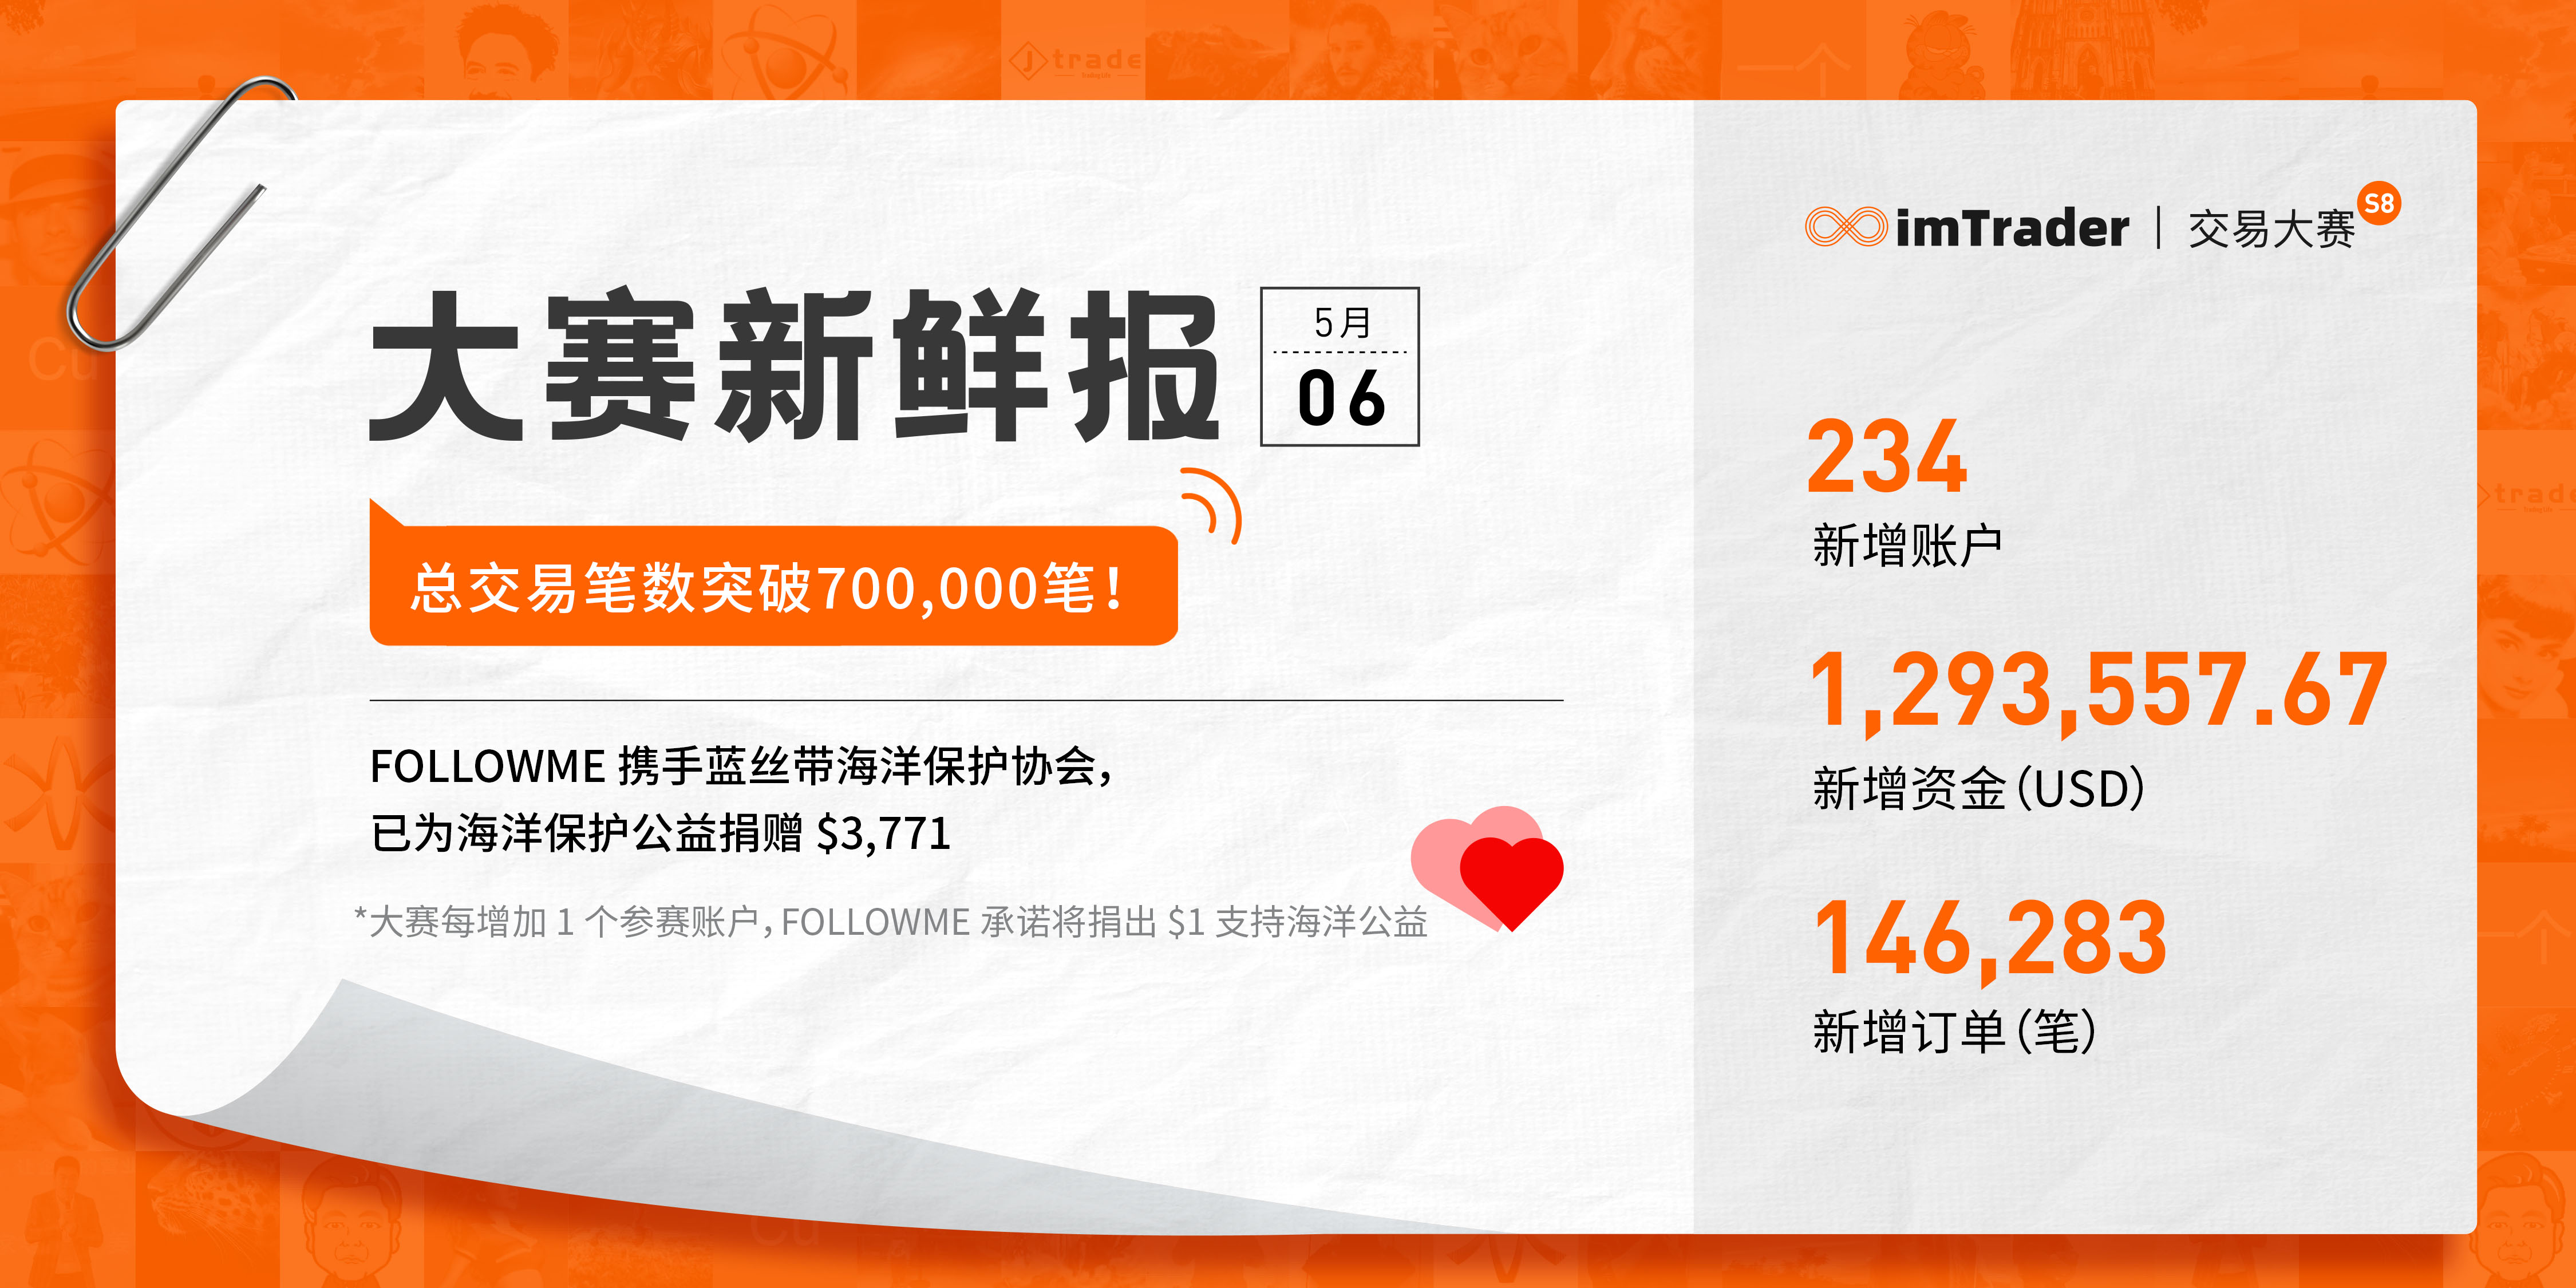 5月6日大赛新鲜报丨总交易笔数突破 700,000 笔！